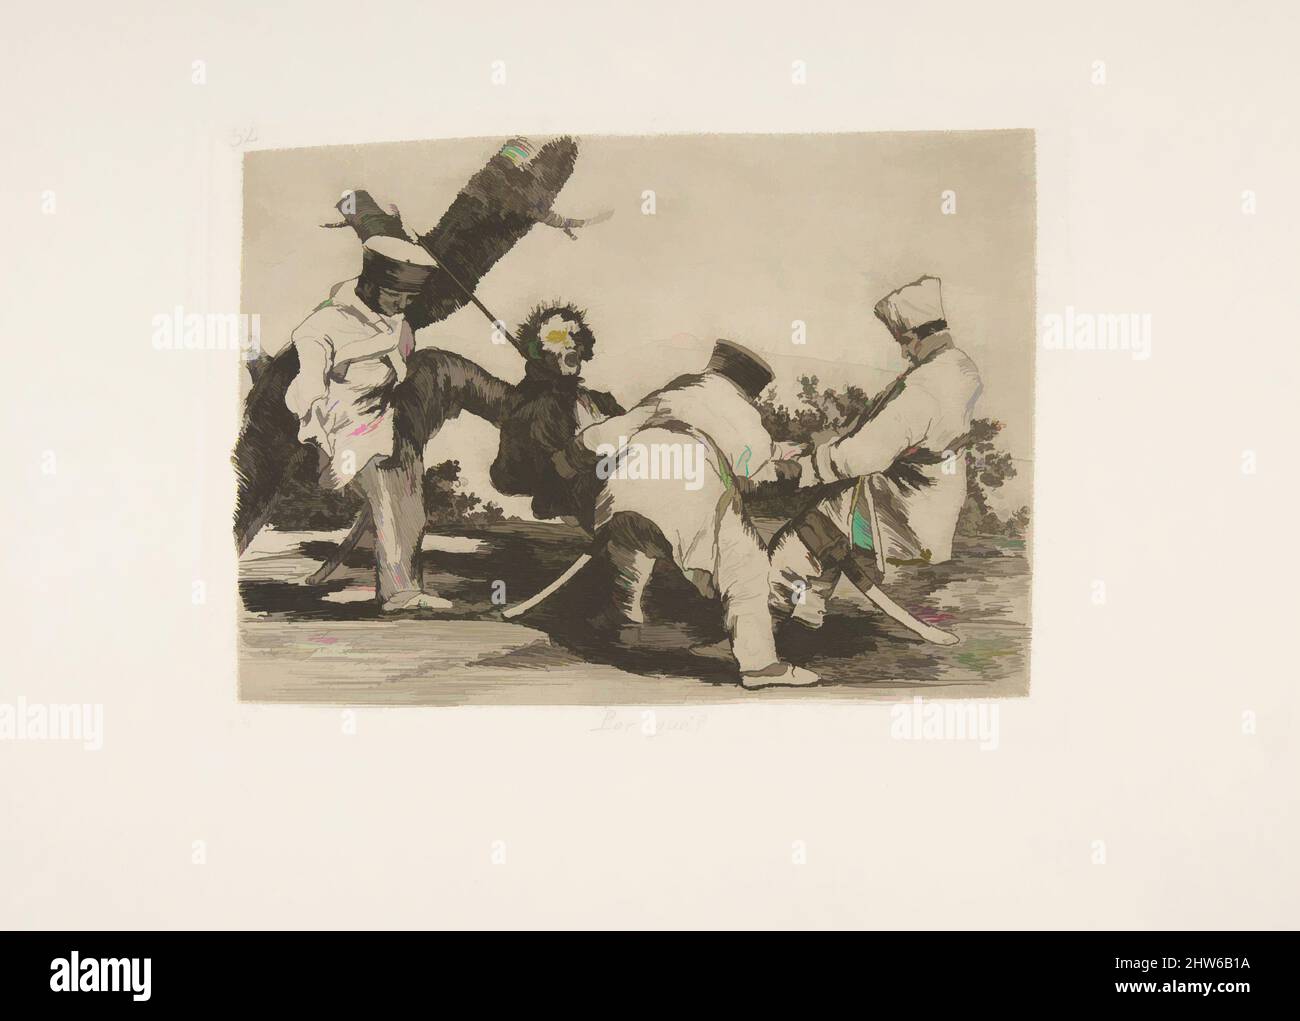 Art inspiré par la planche 32 de 'les désastres de la guerre' (Los Desastres de la Guerra):' Pourquoi?' (Por qué?), 1810 ( publié en 1863), Etching, lavis, point sec, burin et burnisher, Plaque : 6 1/8 × 8 1/16 po (15,5 × 20,5 cm), Prints, Goya (Francisco de Goya y Lucientes) (Espagnol, Fuendetodos, oeuvres classiques modernisées par Artotop avec une touche de modernité. Formes, couleur et valeur, impact visuel accrocheur sur l'art émotions par la liberté d'œuvres d'art d'une manière contemporaine. Un message intemporel qui cherche une nouvelle direction créative. Artistes qui se tournent vers le support numérique et créent le NFT Artotop Banque D'Images